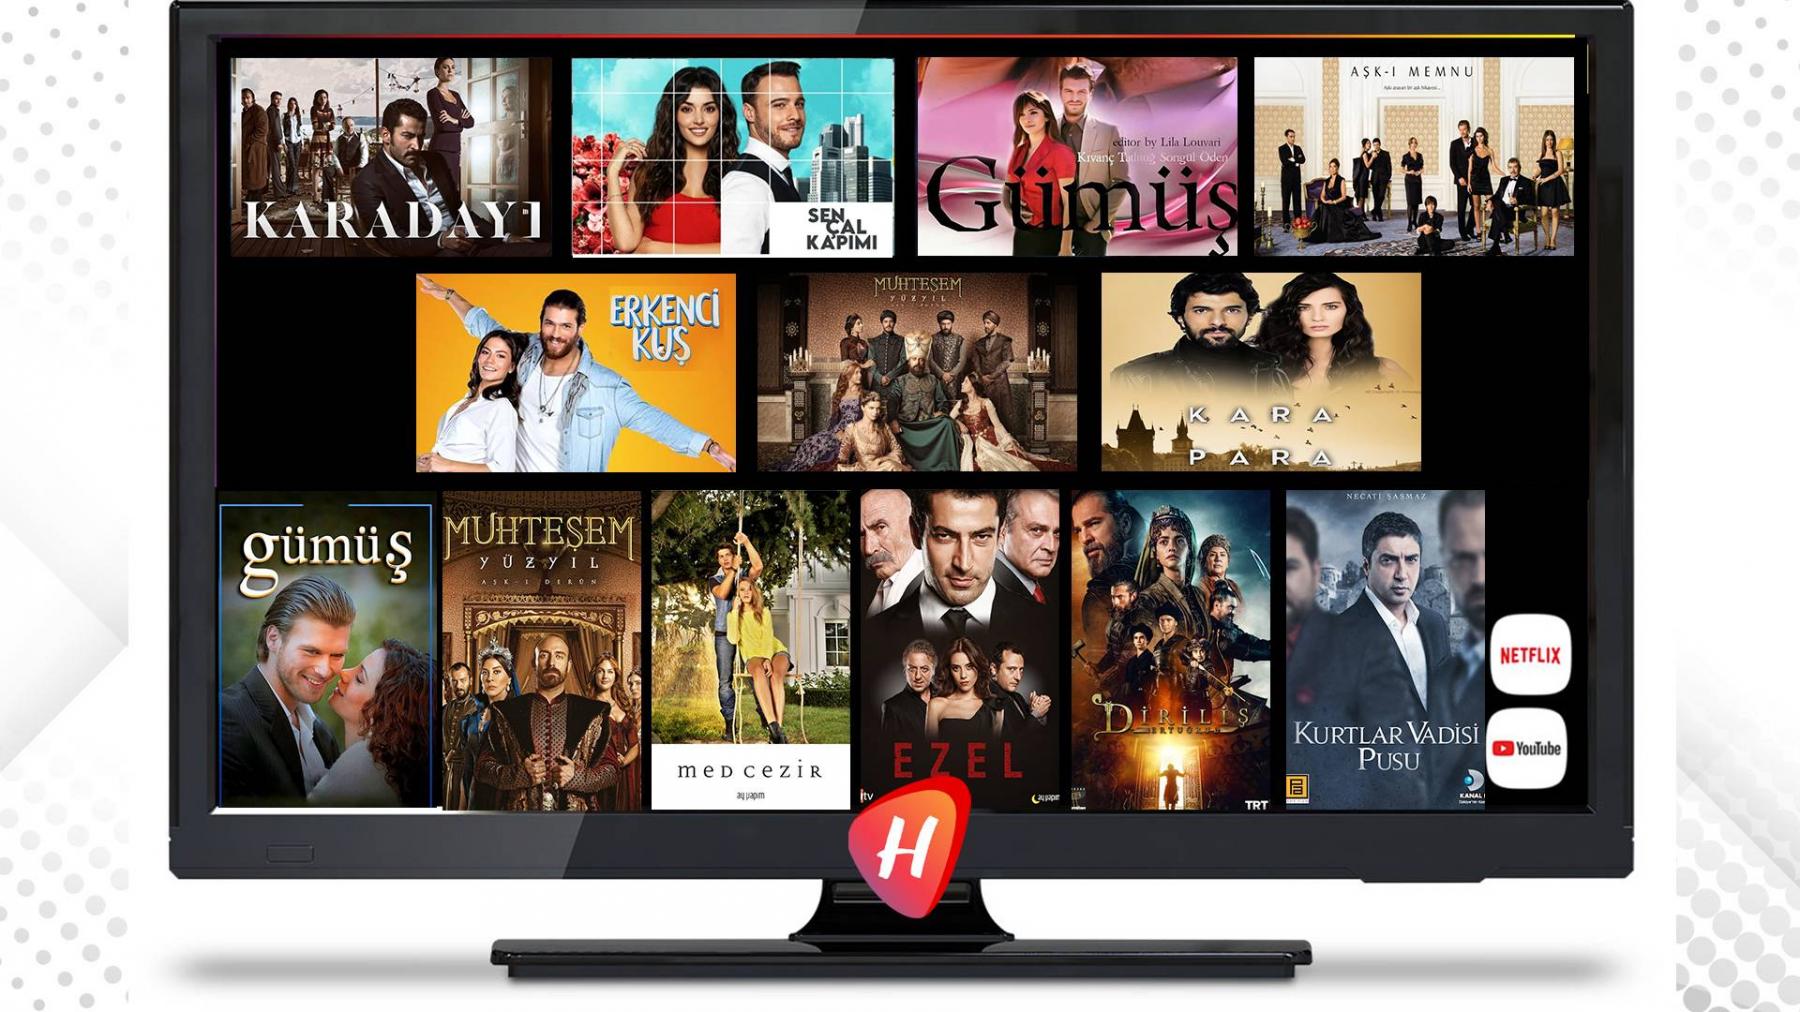 قائمة أكثر المسلسلات التركية مشاهدةً في العالم